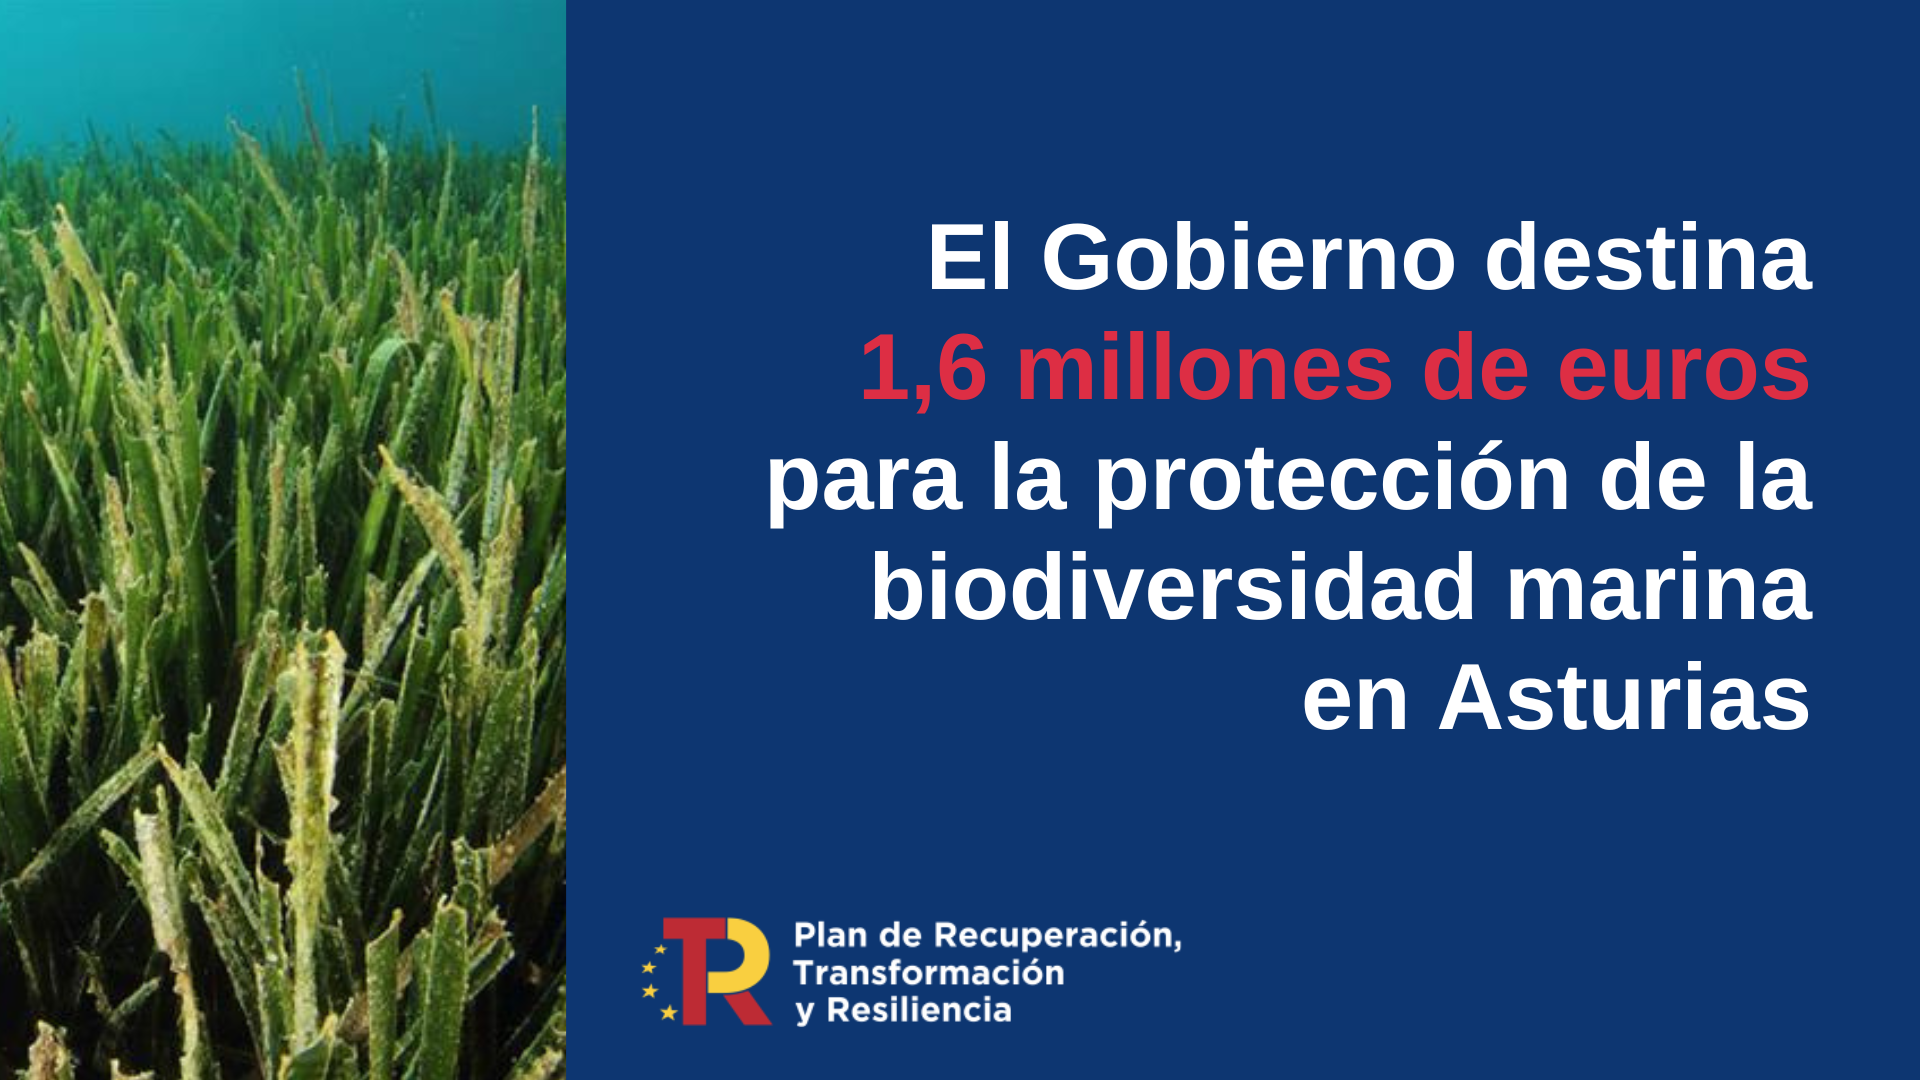 El Gobierno destina más de 1,6 millones de euros a Asturias para la protección de la biodiversidad marina